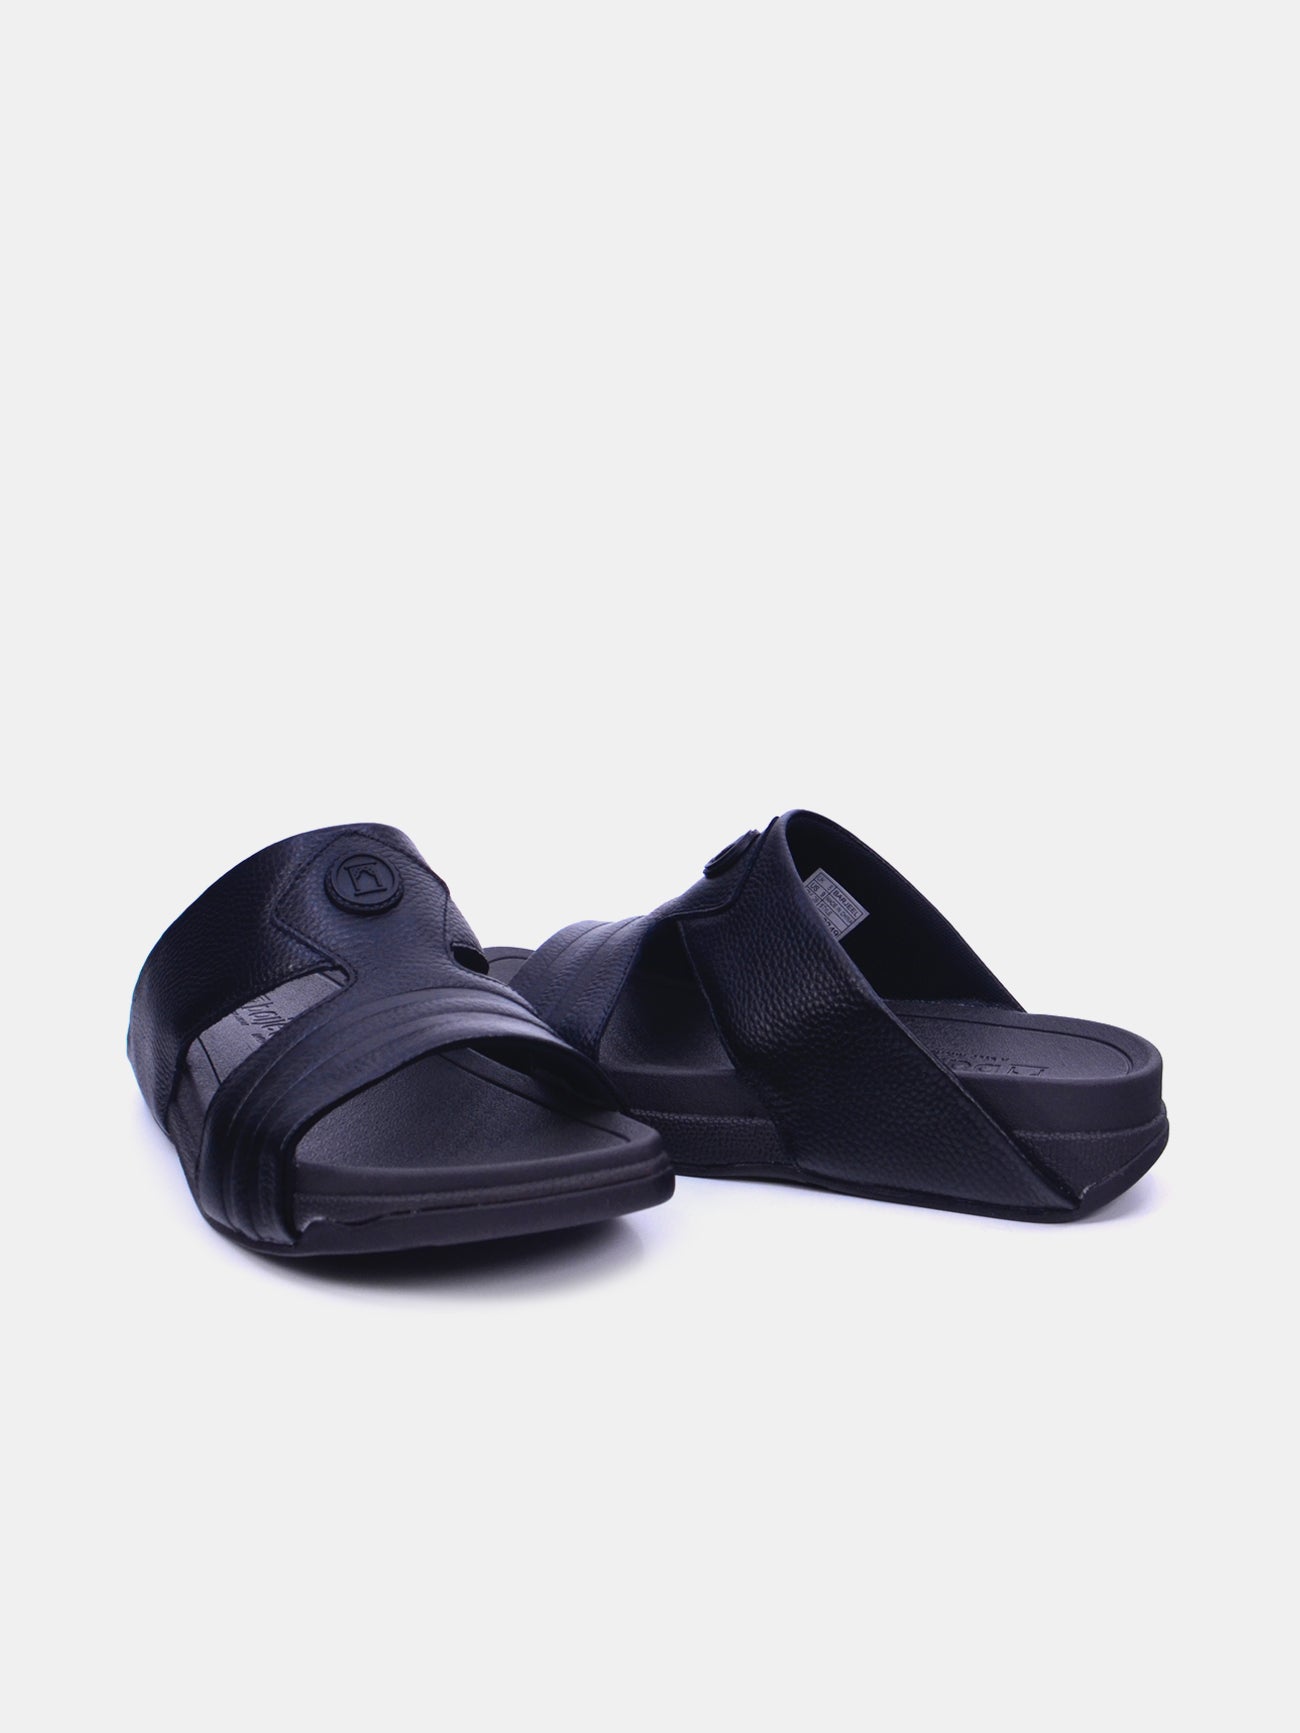 Barjeel Uno 20249 Men's Arabic Sandals #color_Black